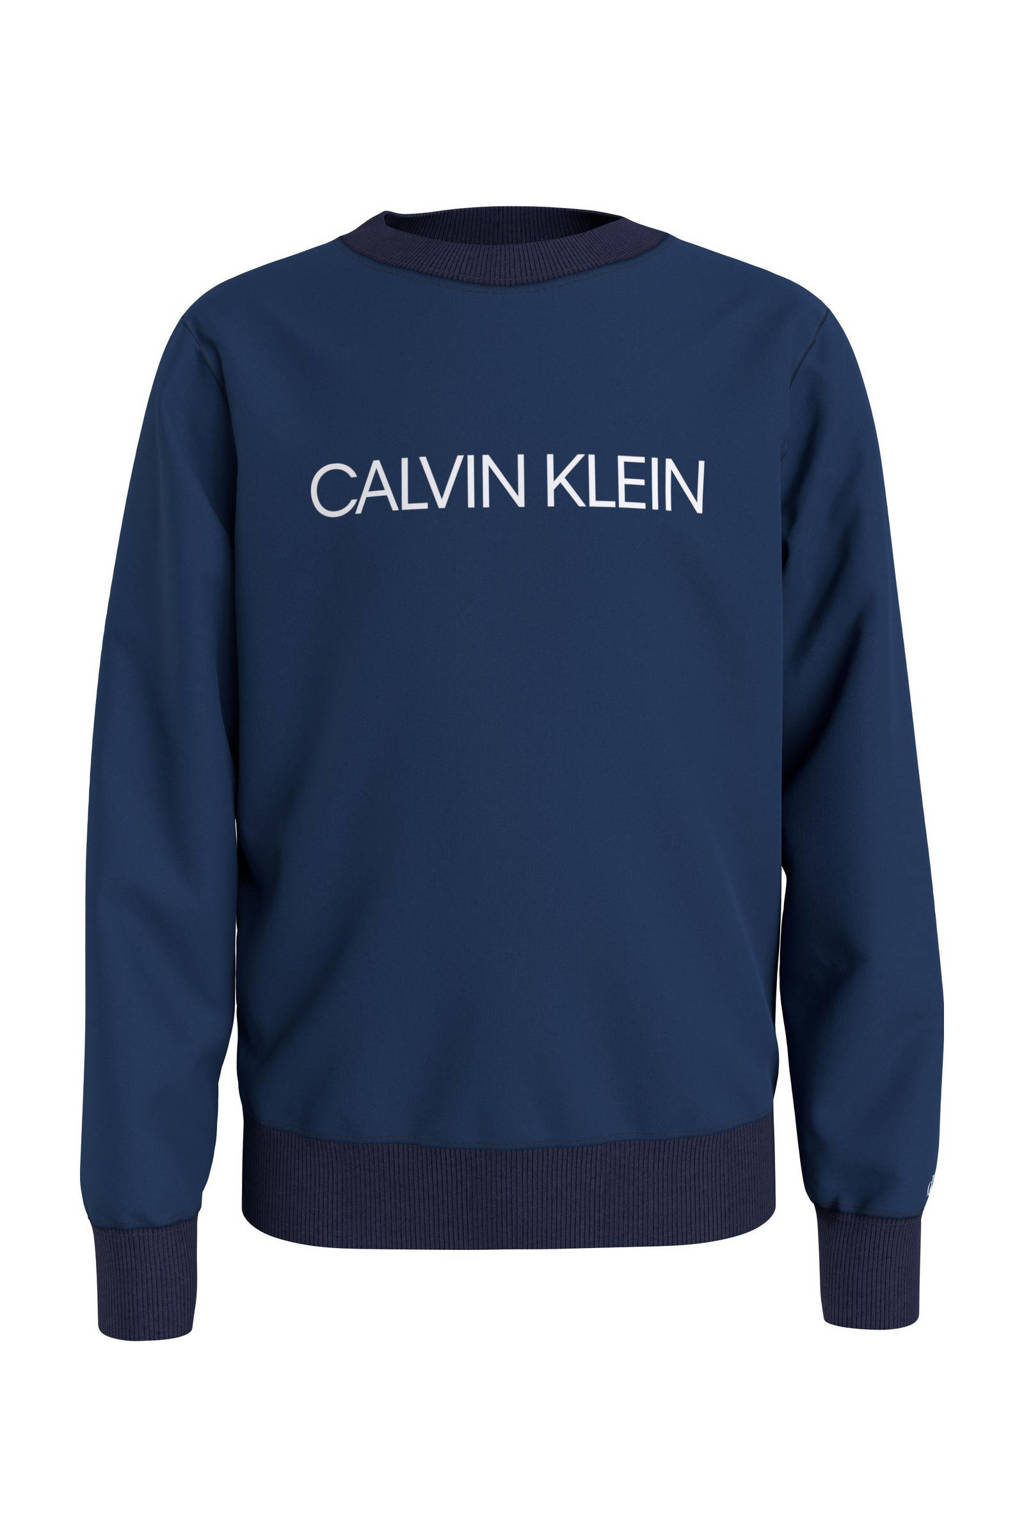 Blauwe jongens en meisjes CALVIN KLEIN JEANS sweater van katoen met logo dessin, lange mouwen, ronde hals en geribde boorden